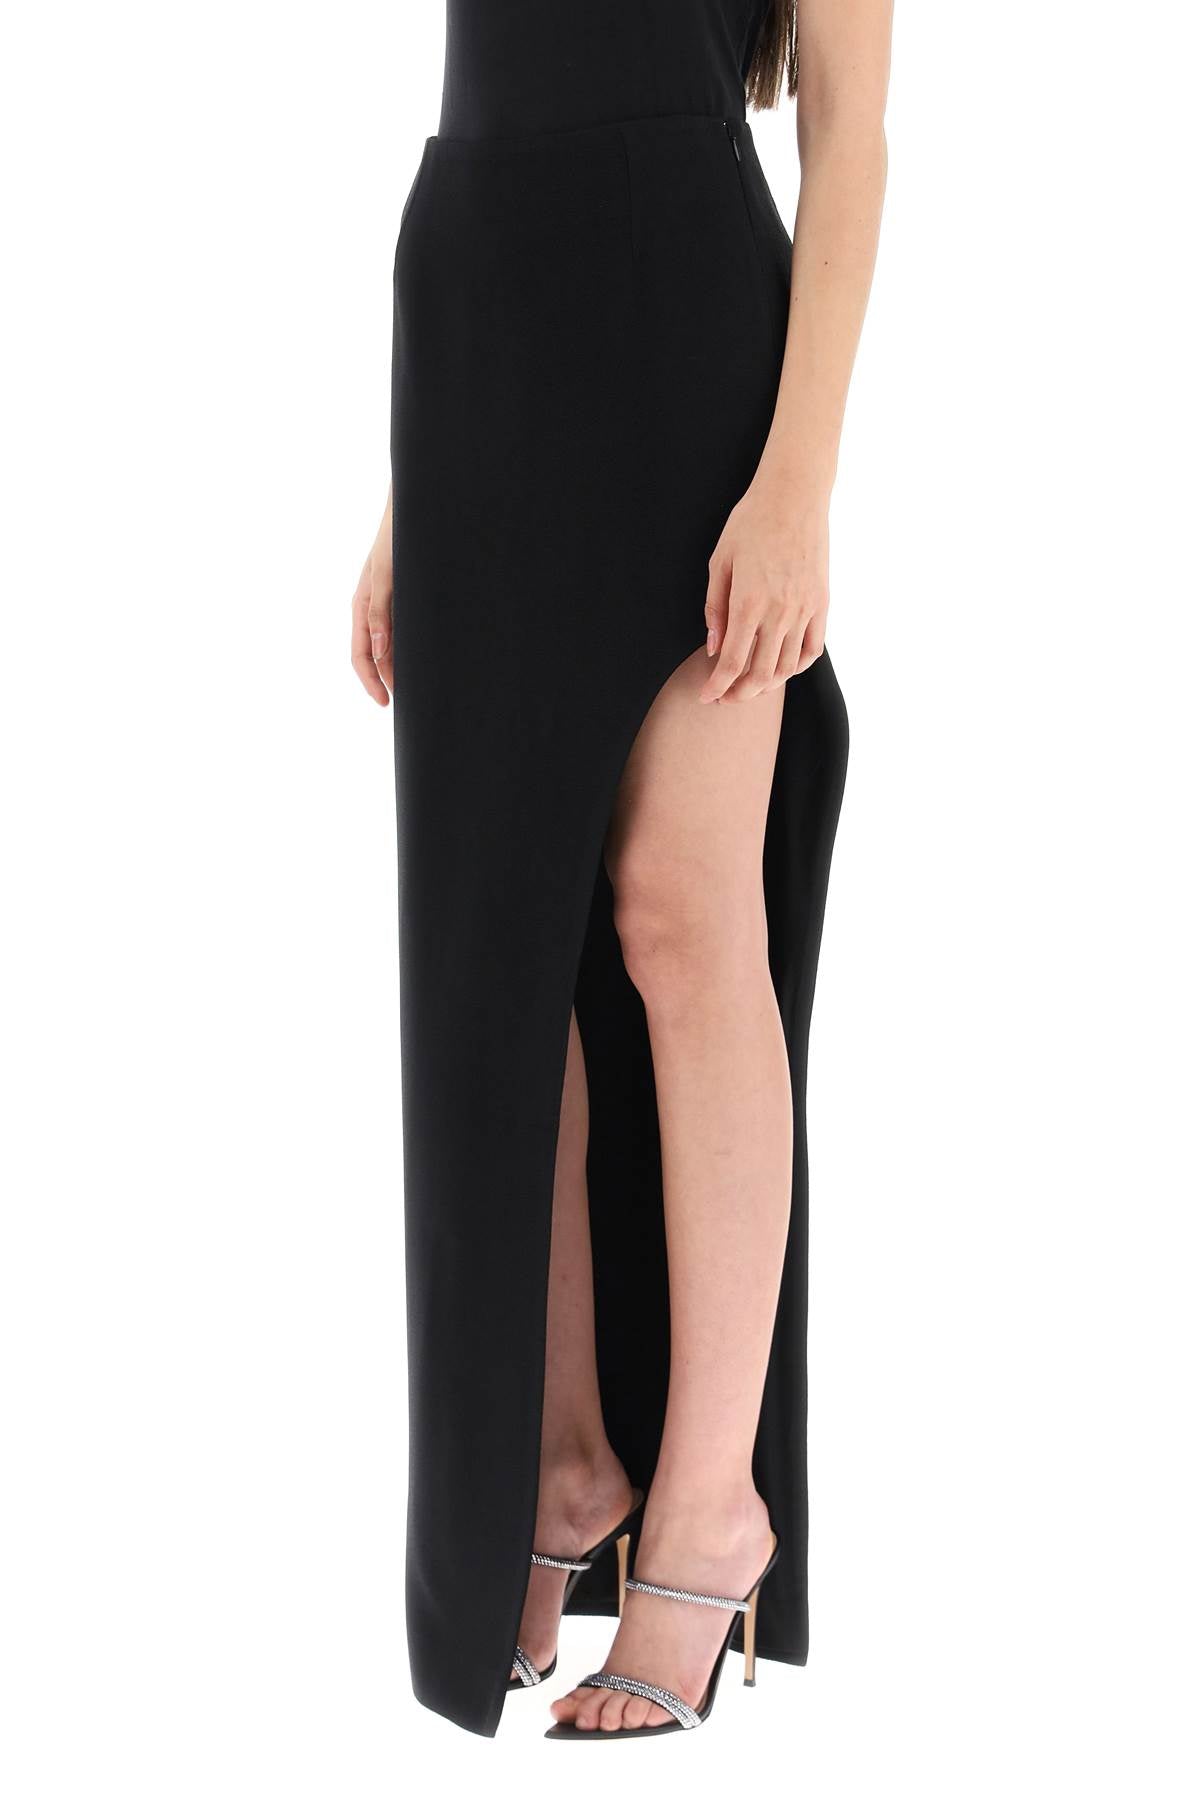 Mvp wardrobe 'plaza' skirt with asymmetrical hem-3